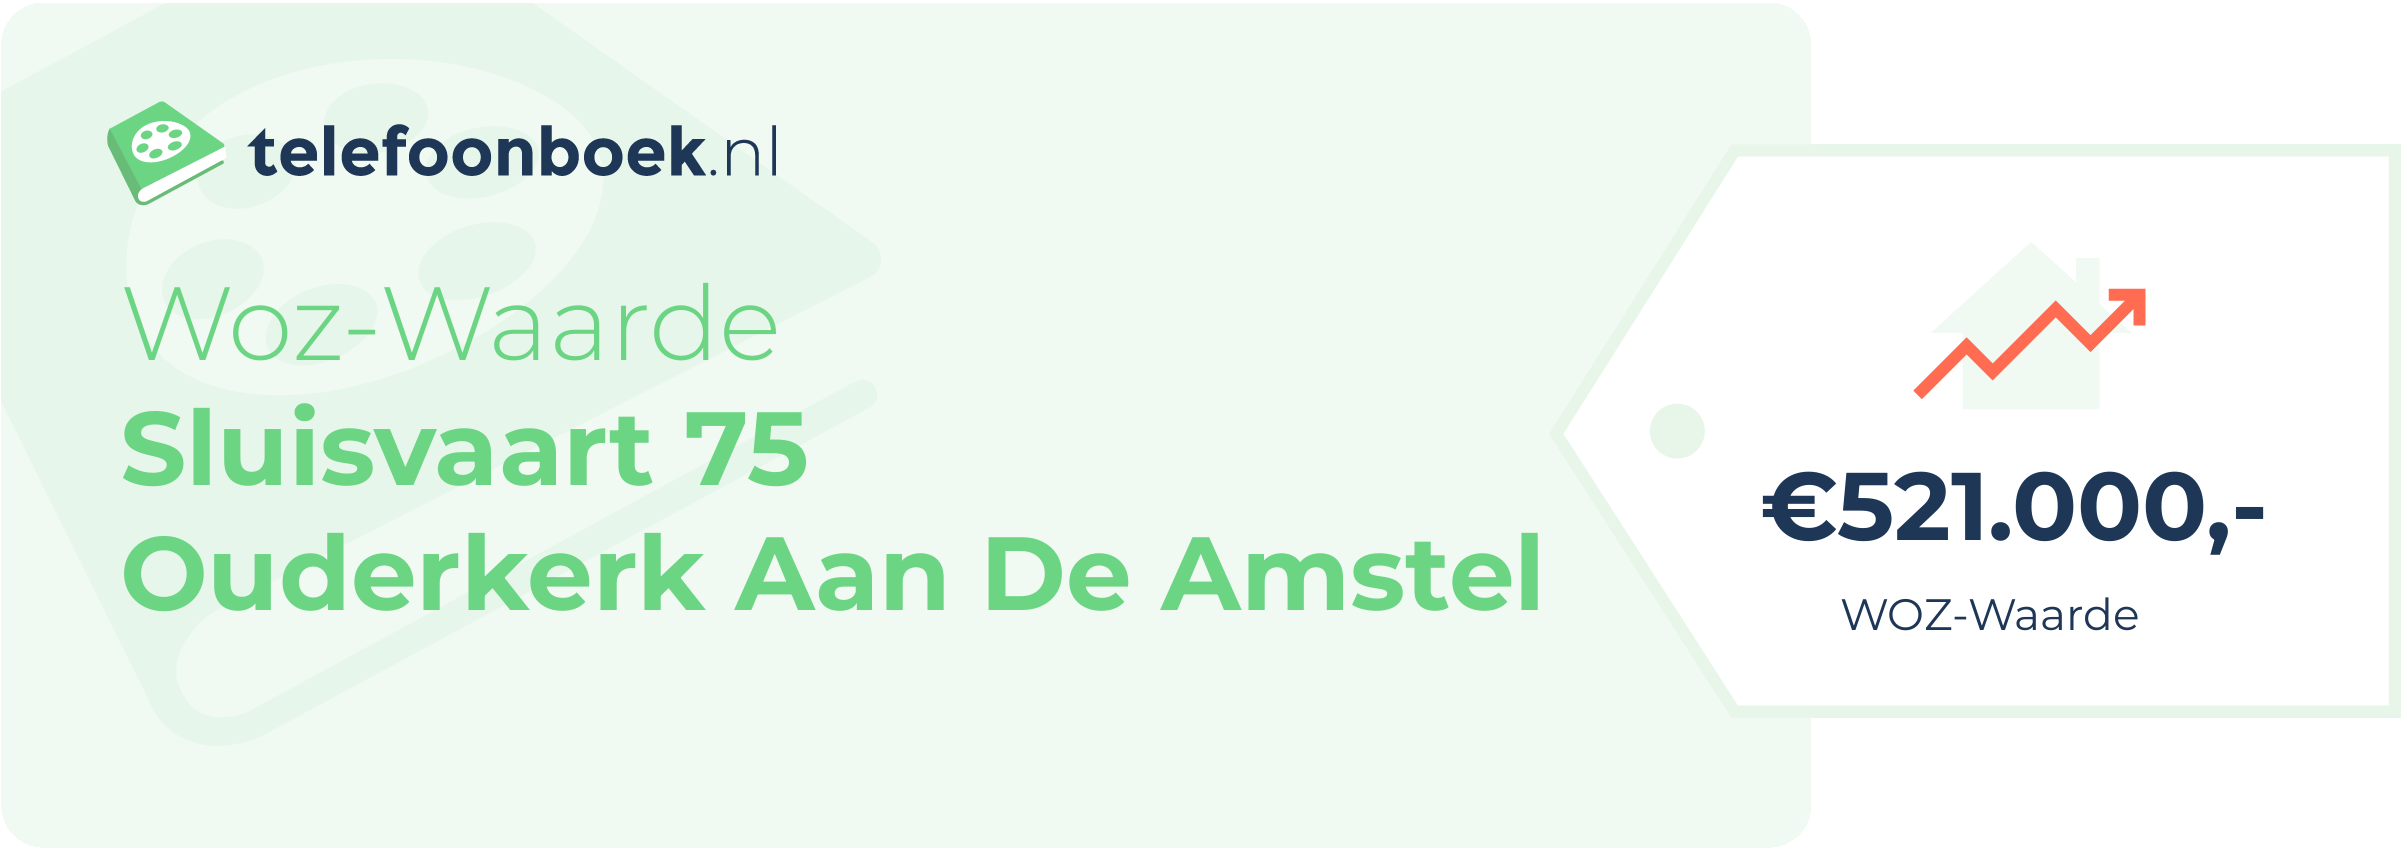 WOZ-waarde Sluisvaart 75 Ouderkerk Aan De Amstel